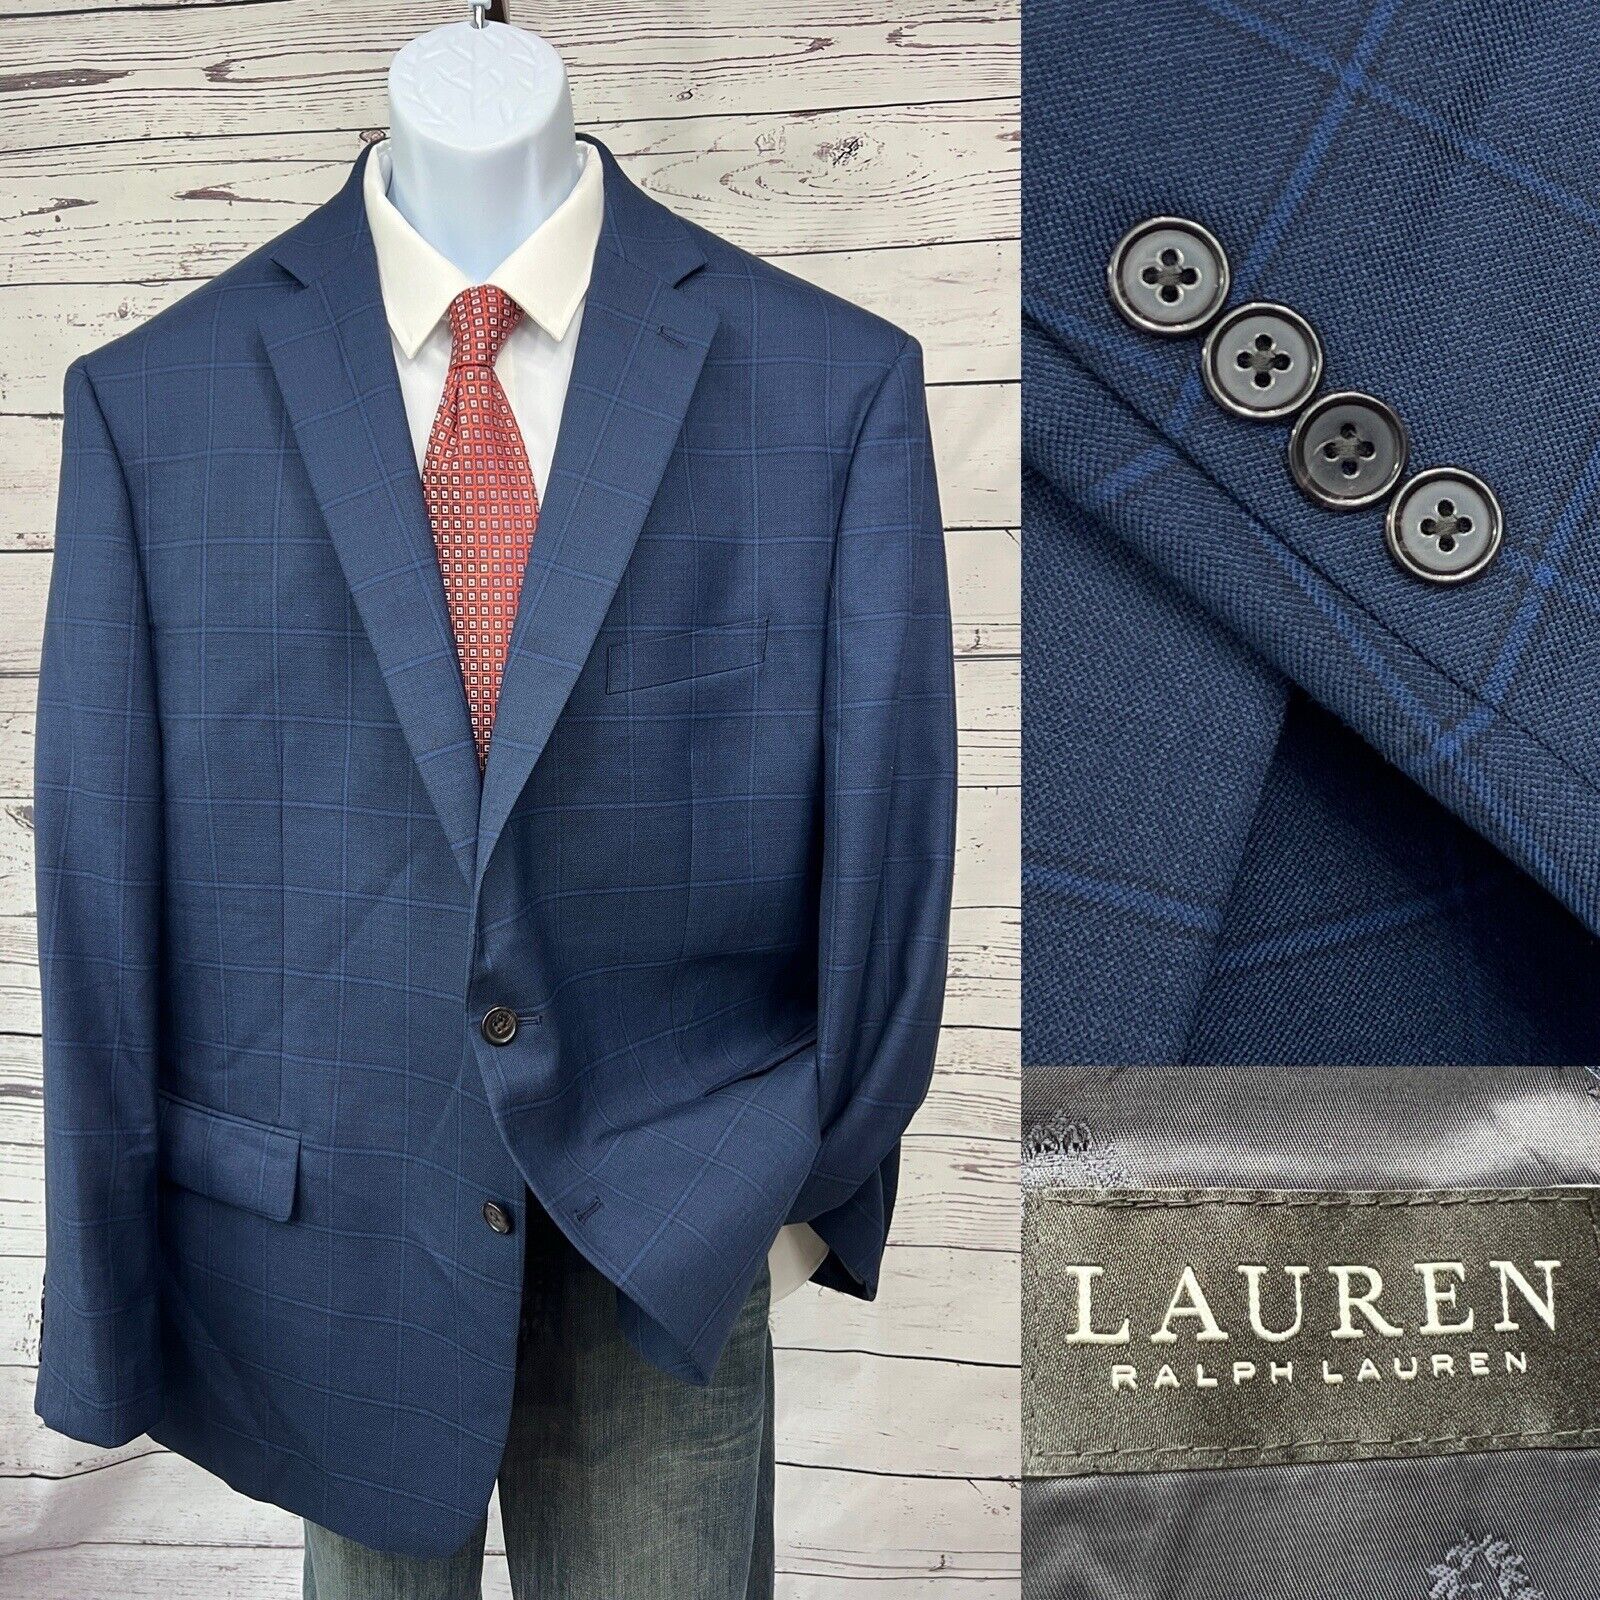 Lauren Ralph Lauren 2 Button Blazer Men’s 50R Blue Windowpane Sport Coat Jacket